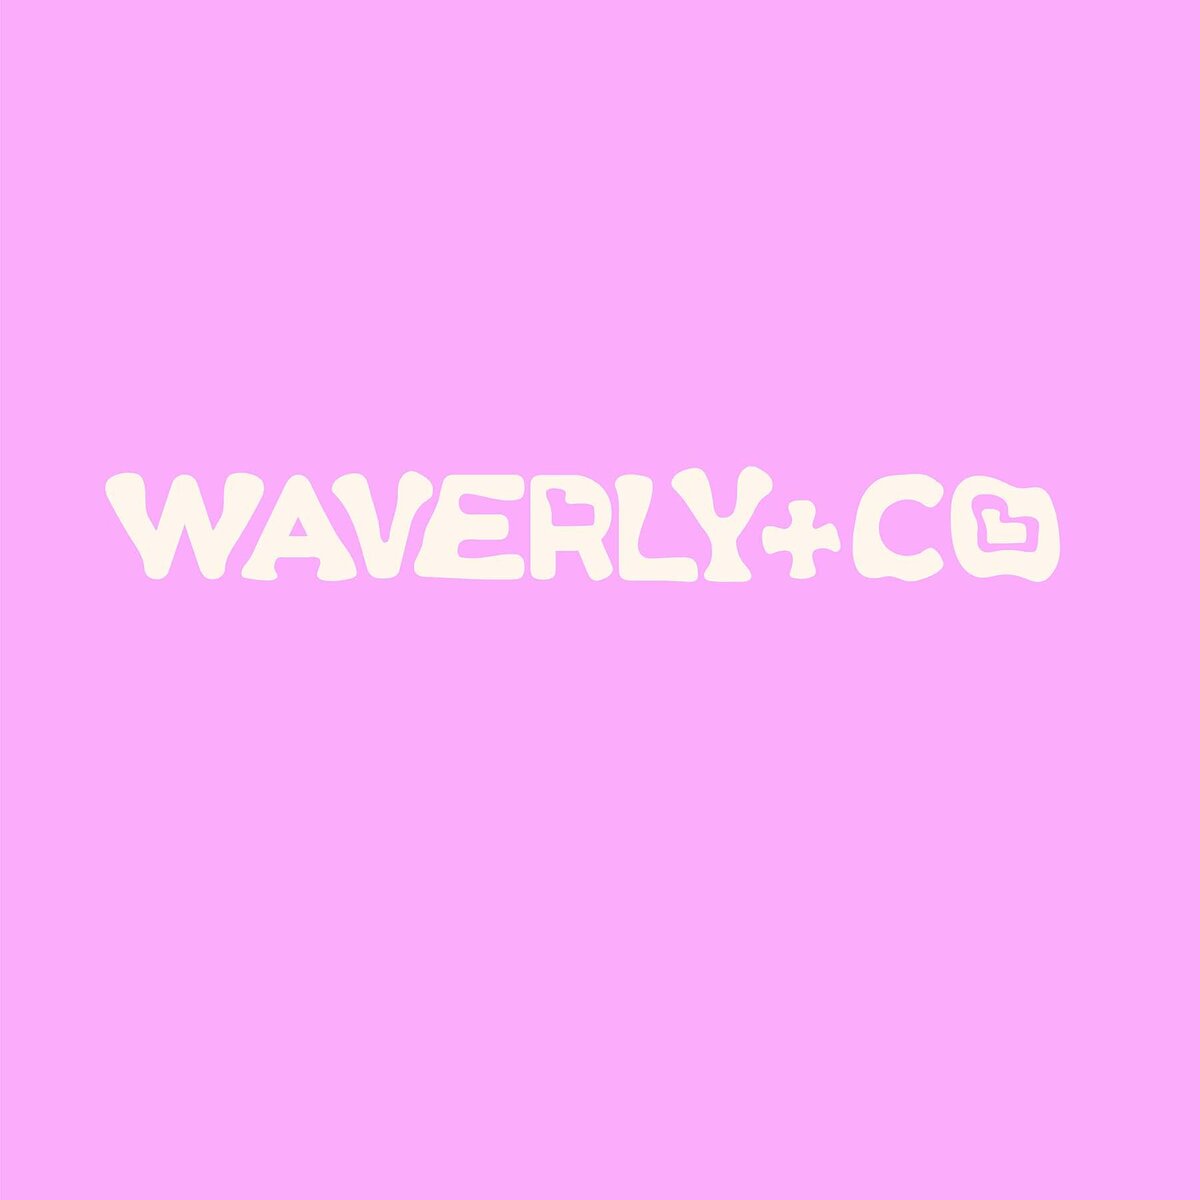 Waverly+co-07